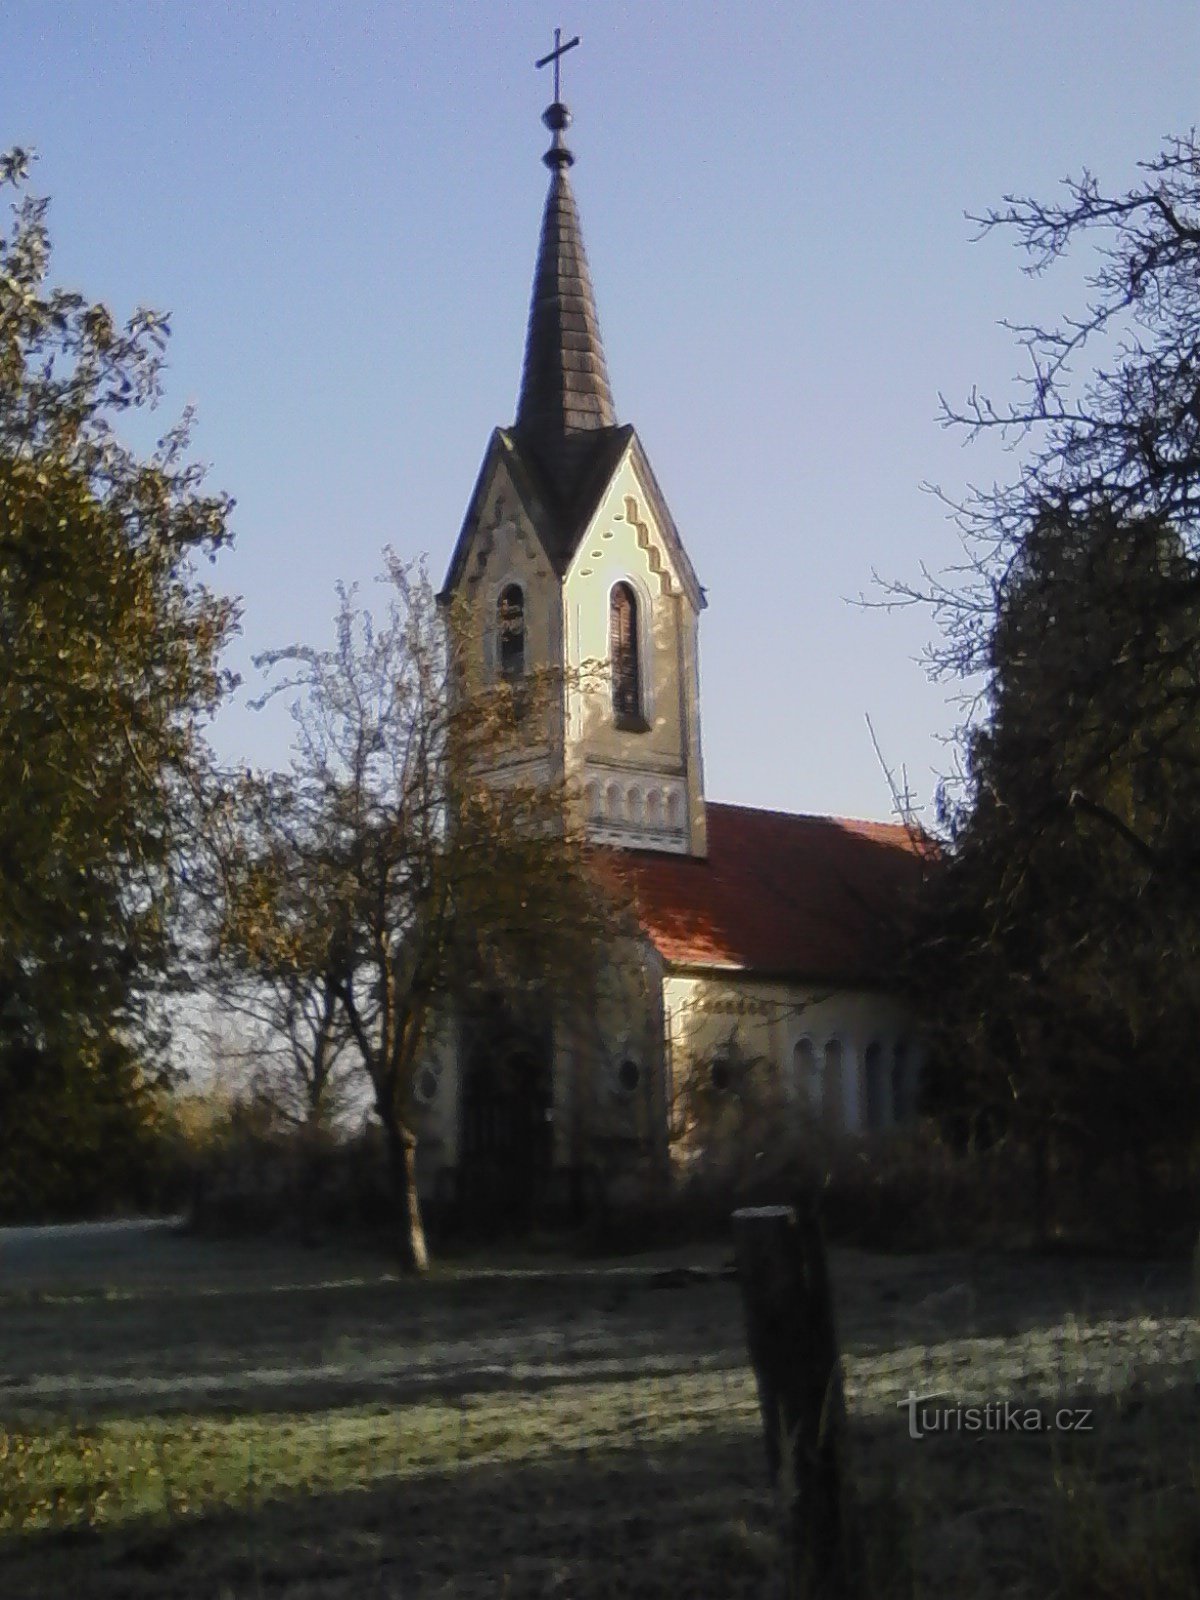 2. Capela Sedmibolestná P. Maria lângă Jetřichovice din 1859.